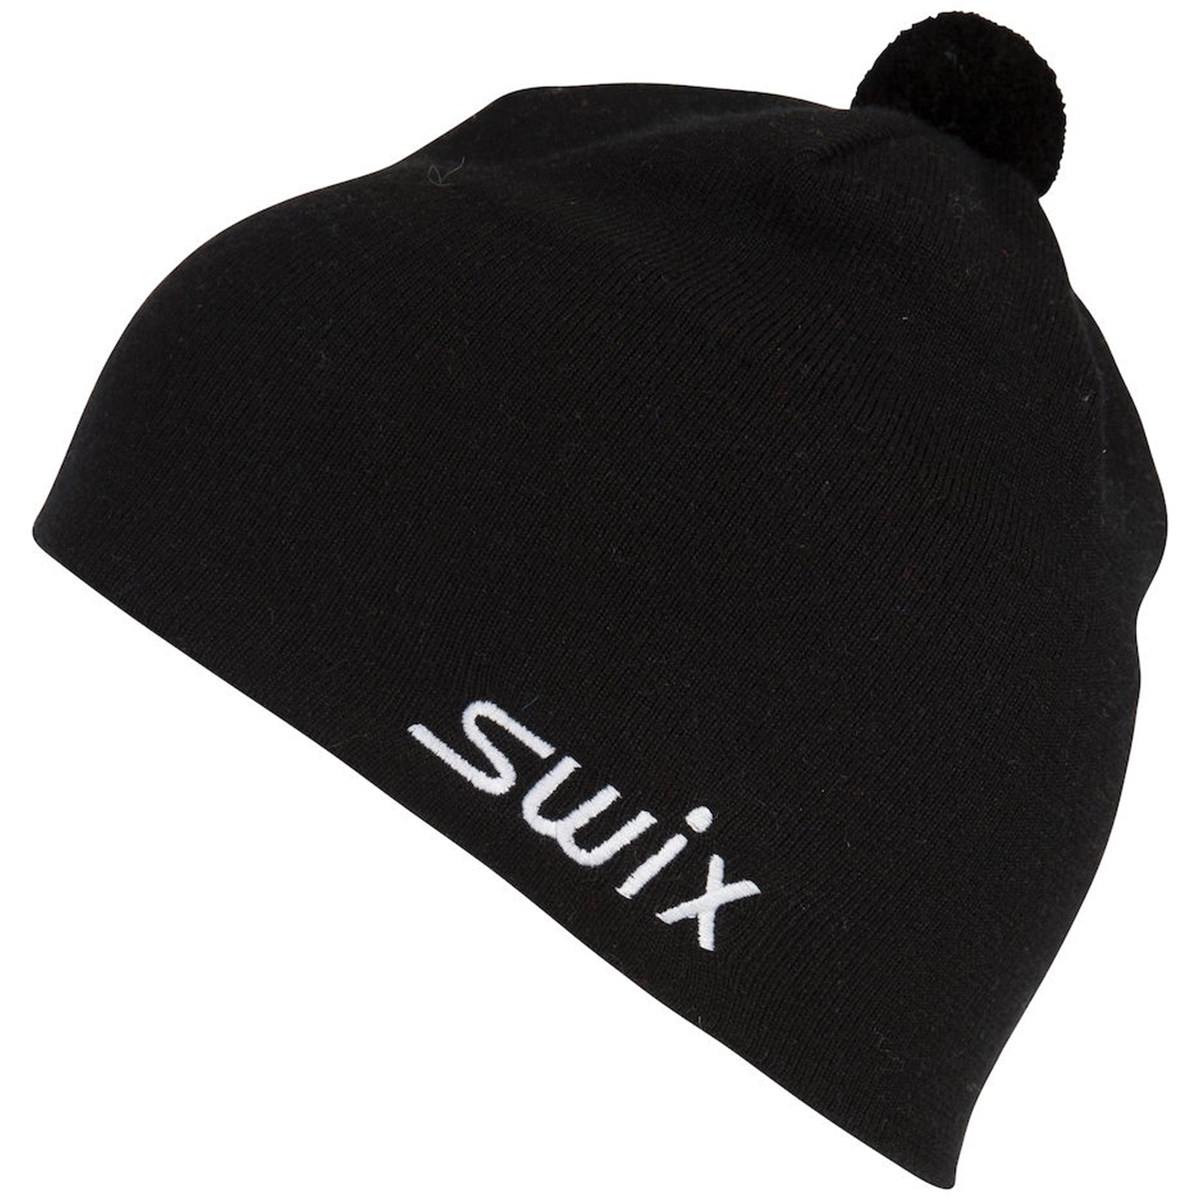 Produktbild von Swix Tradition Mütze - Schwarz